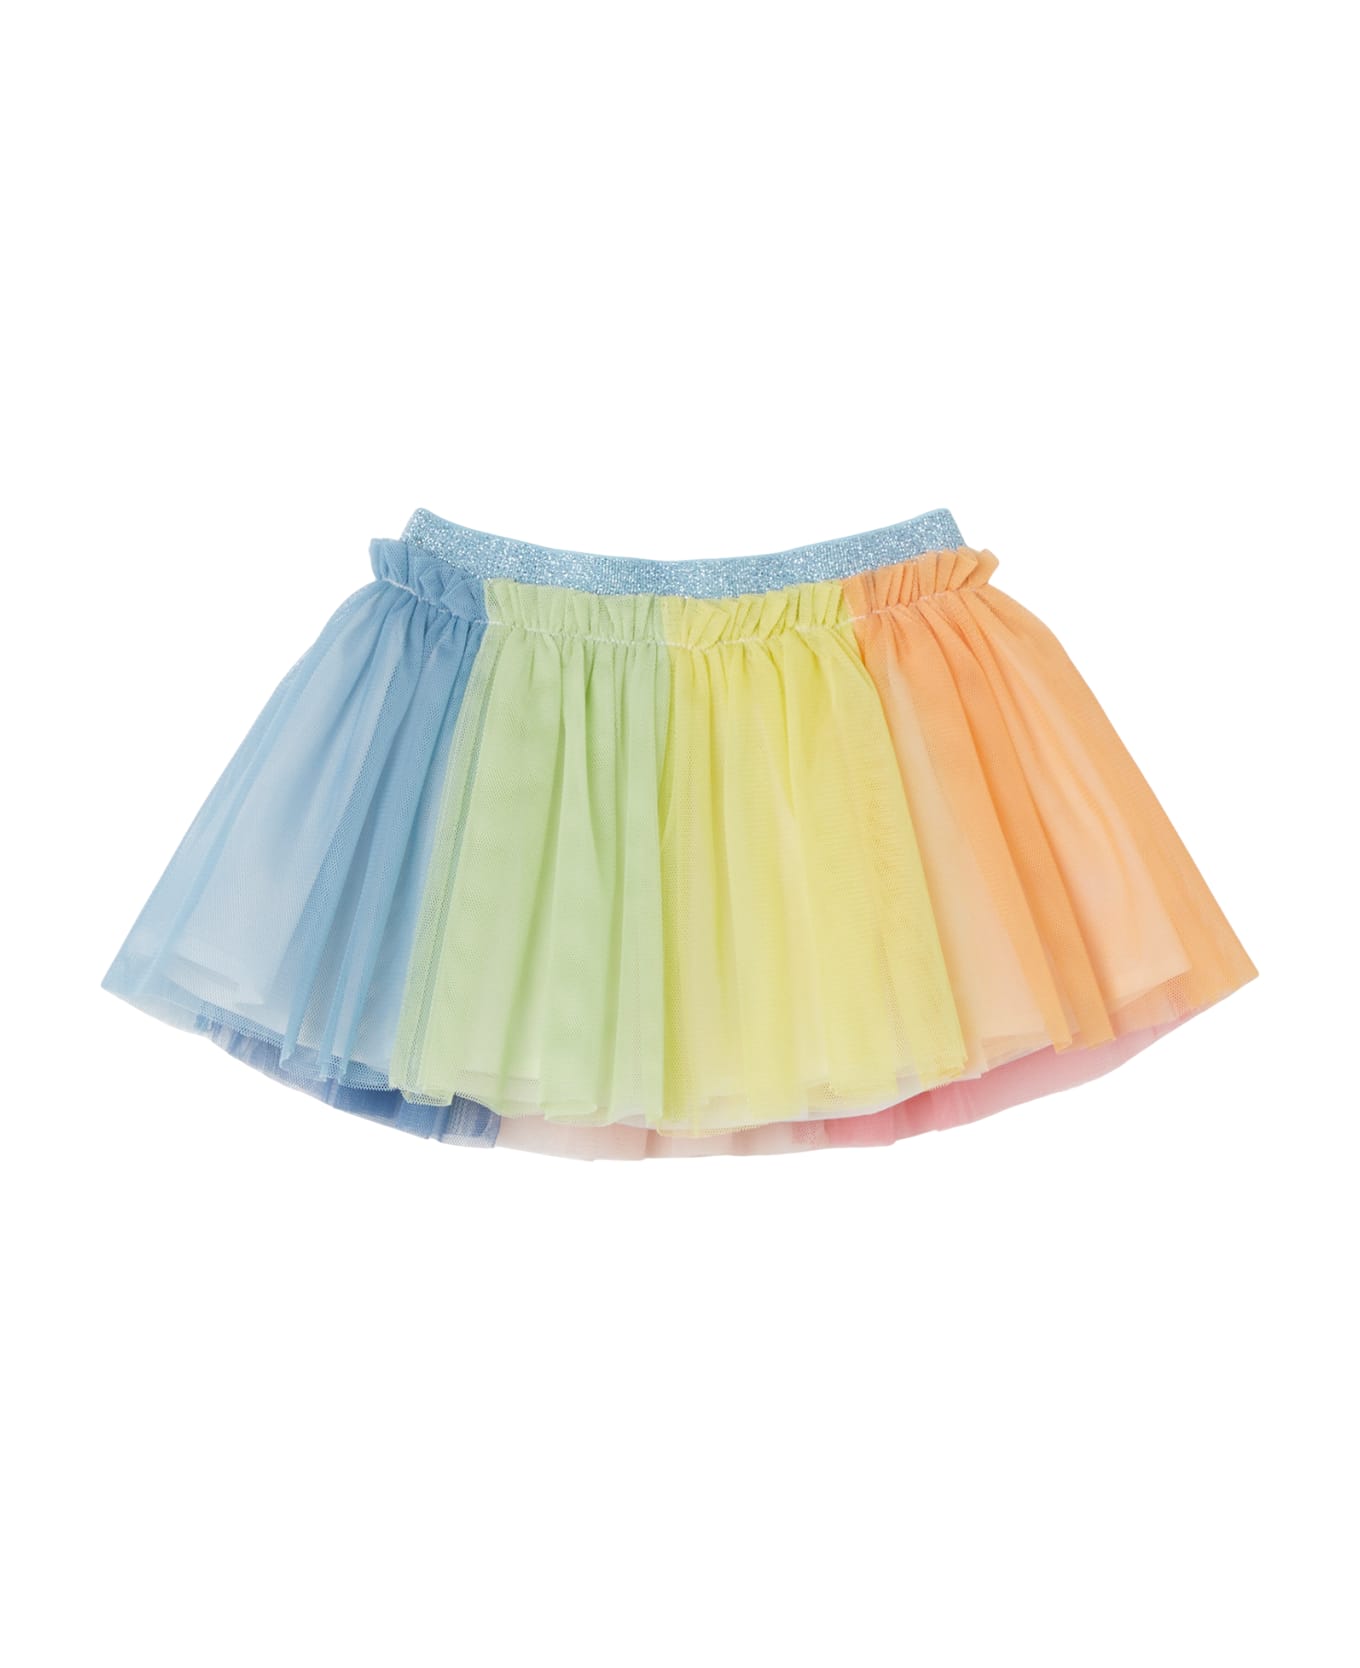 Stella McCartney Kids Skirt - Multicolor